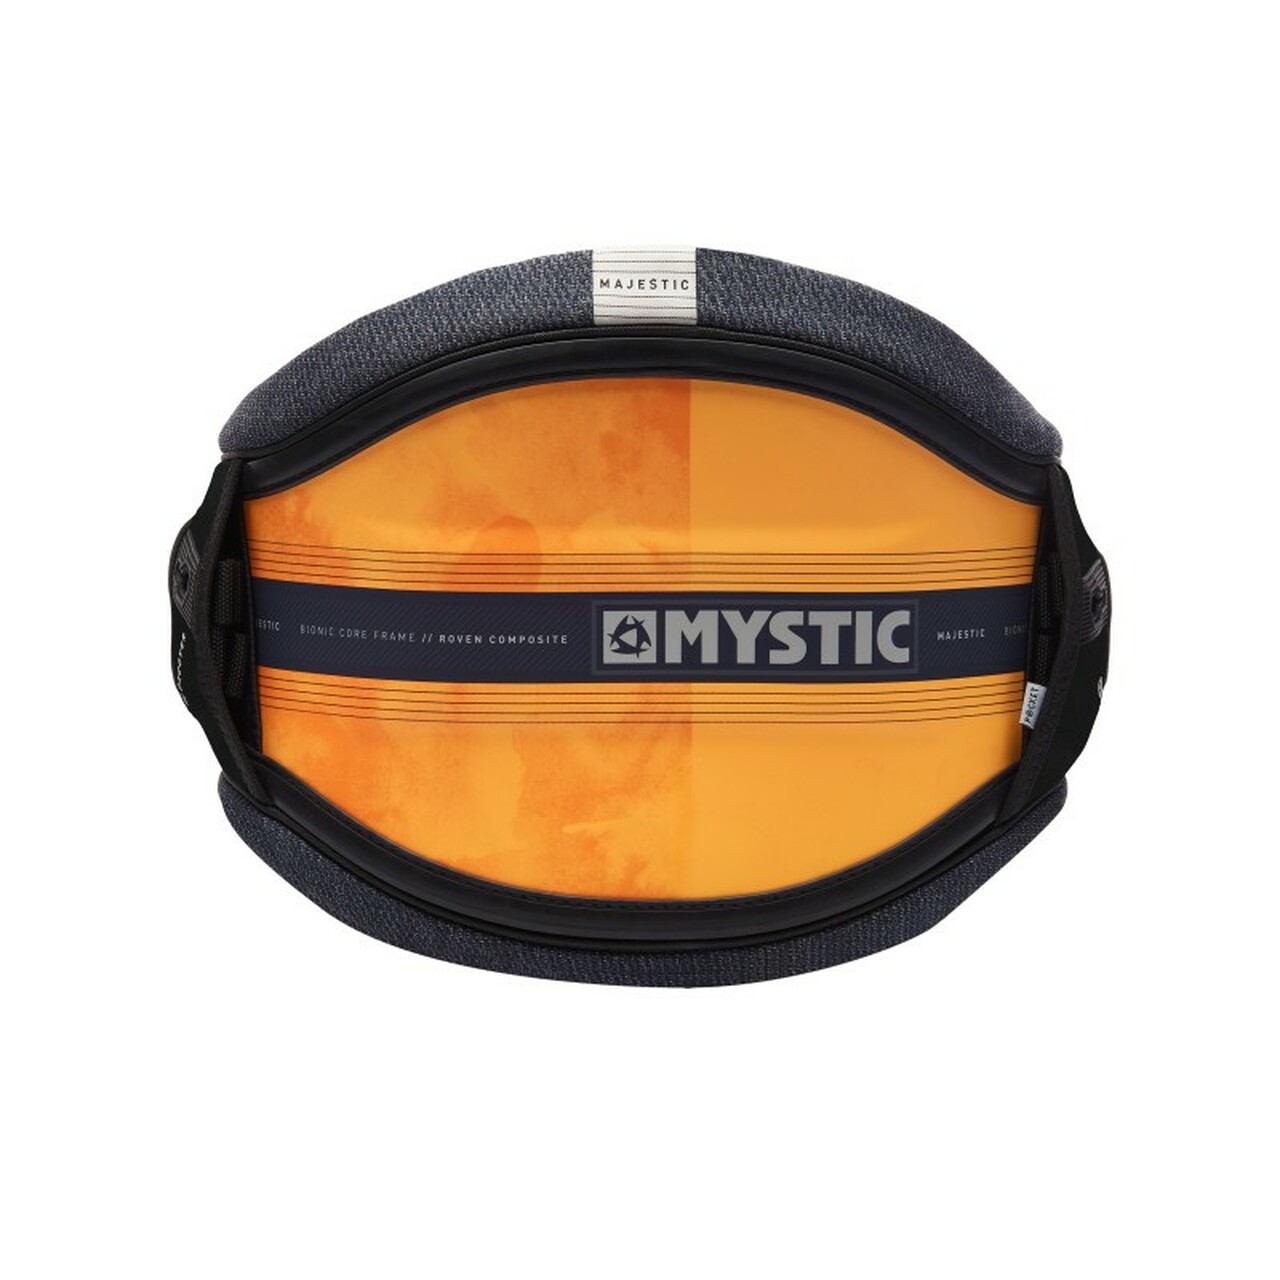 Mystic majestic harness 2019 orange